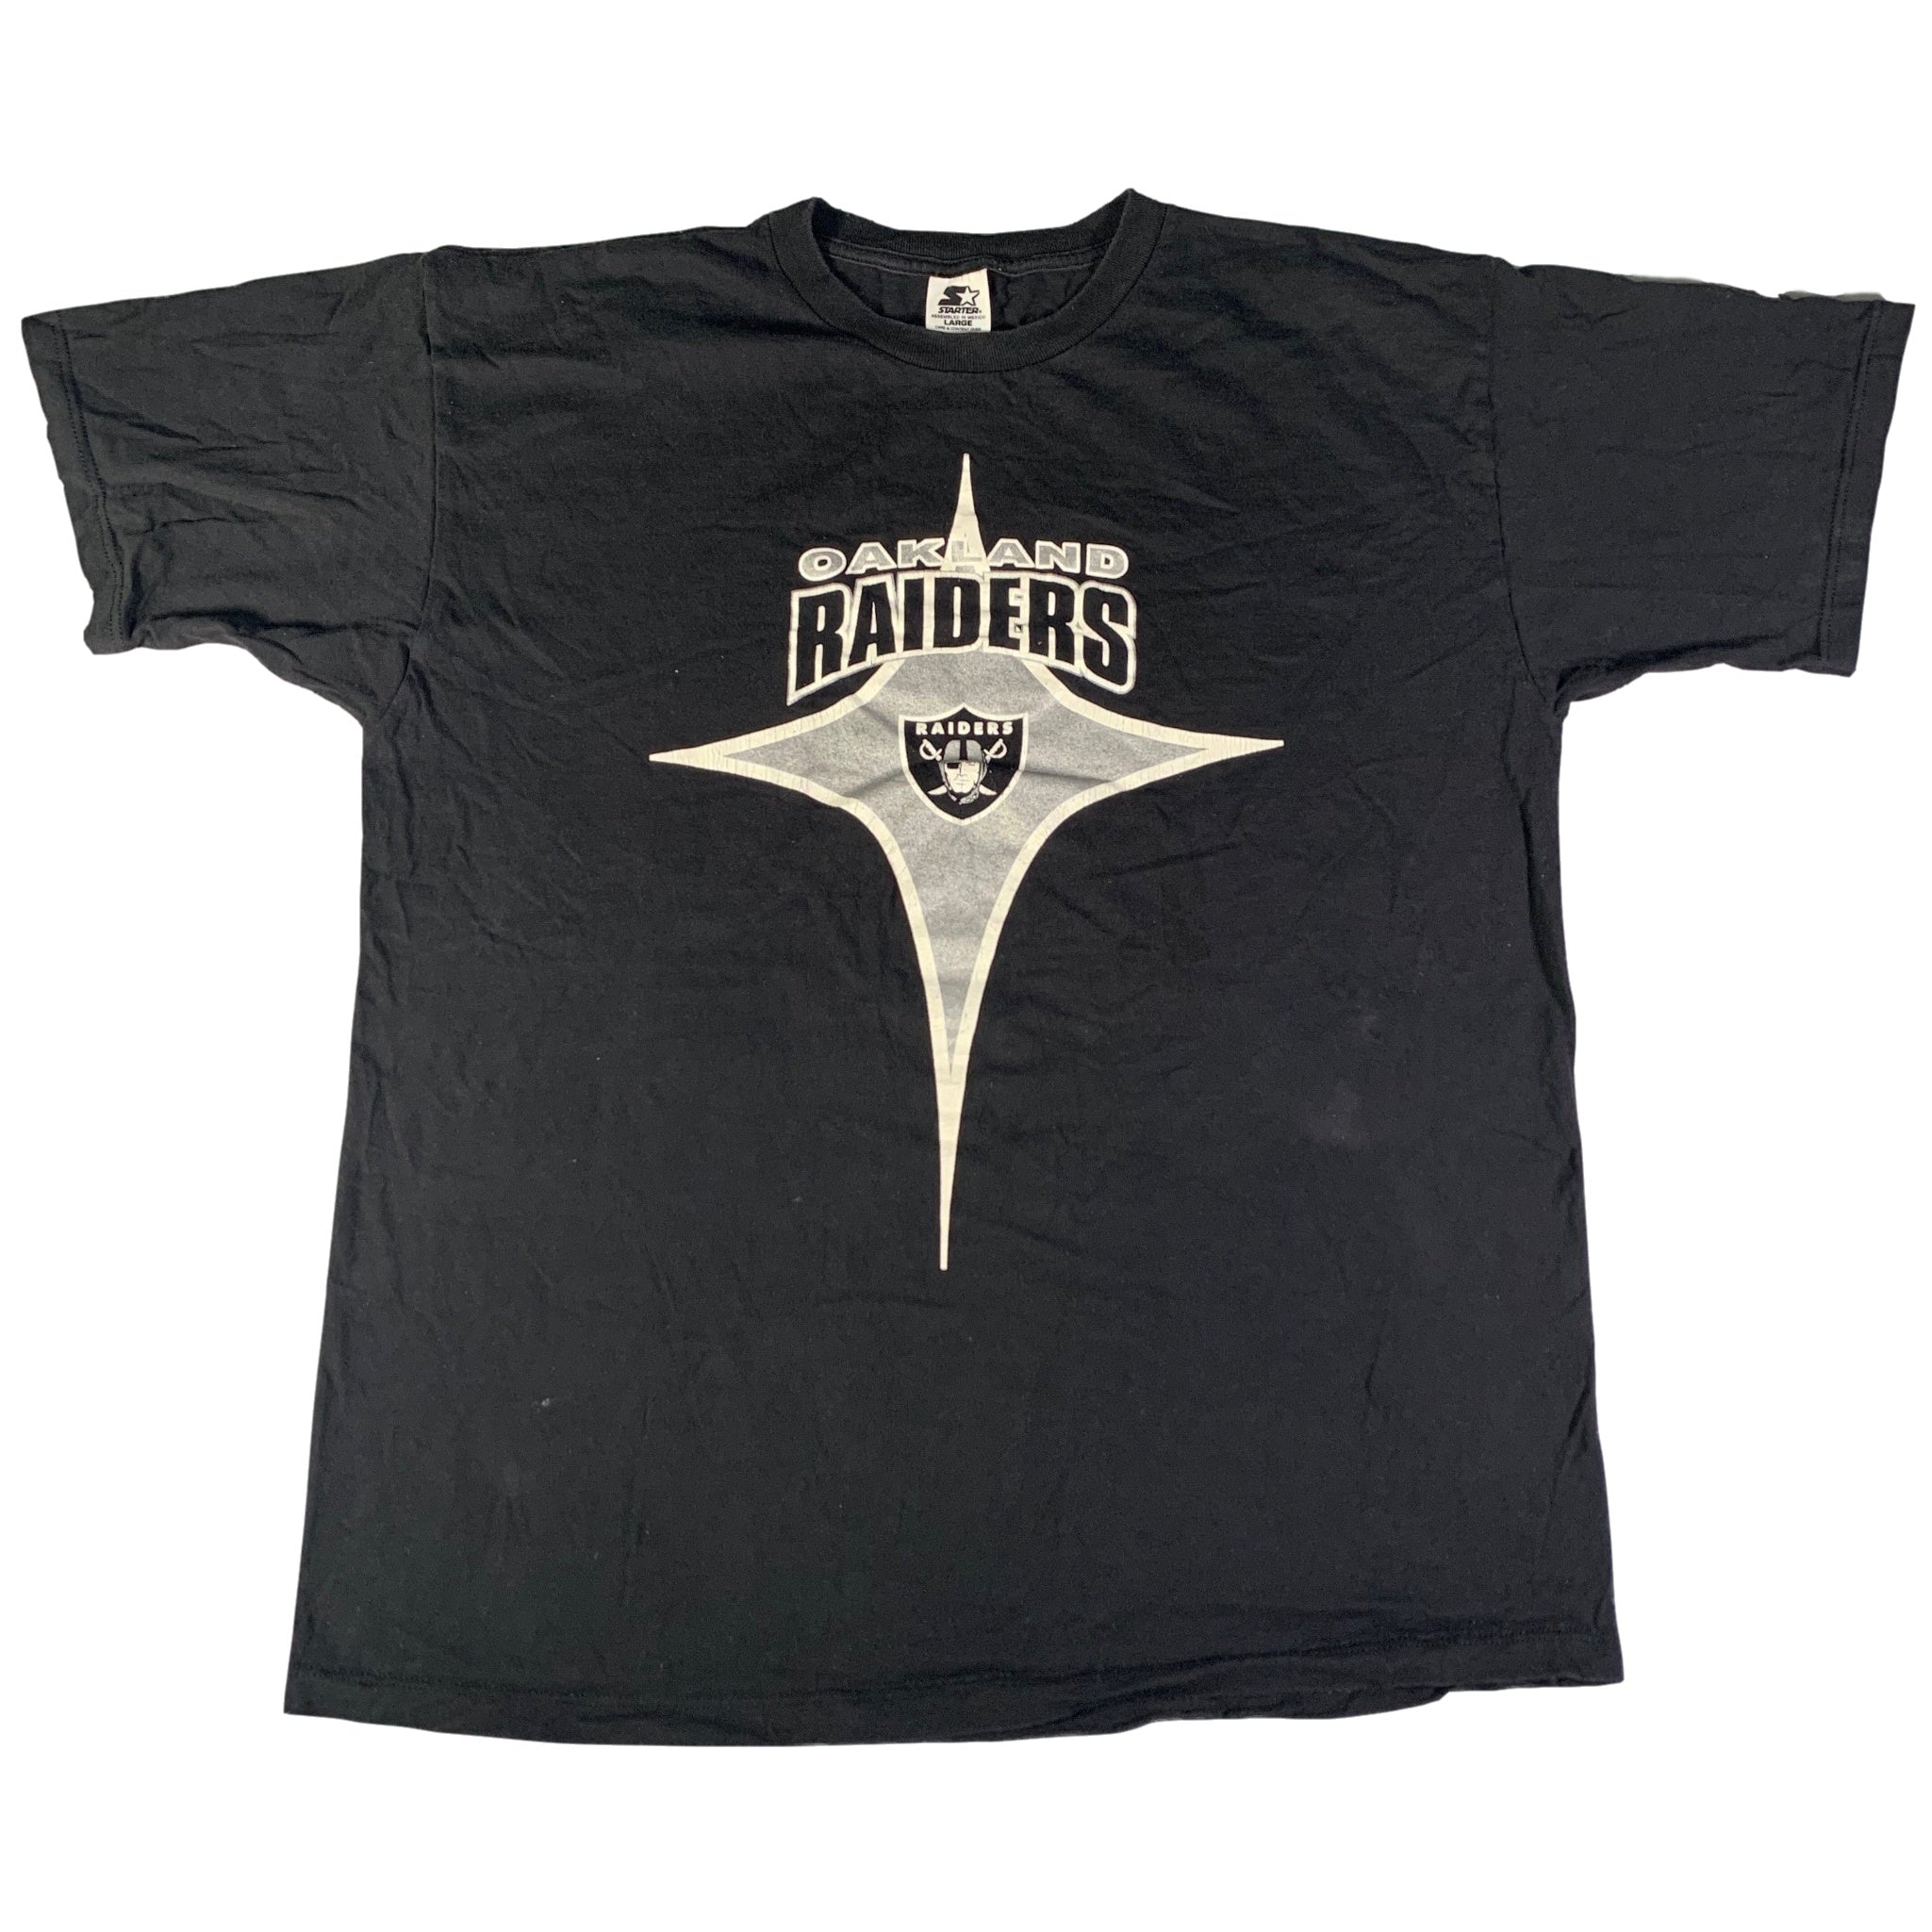 Las Vegas Raiders Vintage Super Bowl Tee in Black